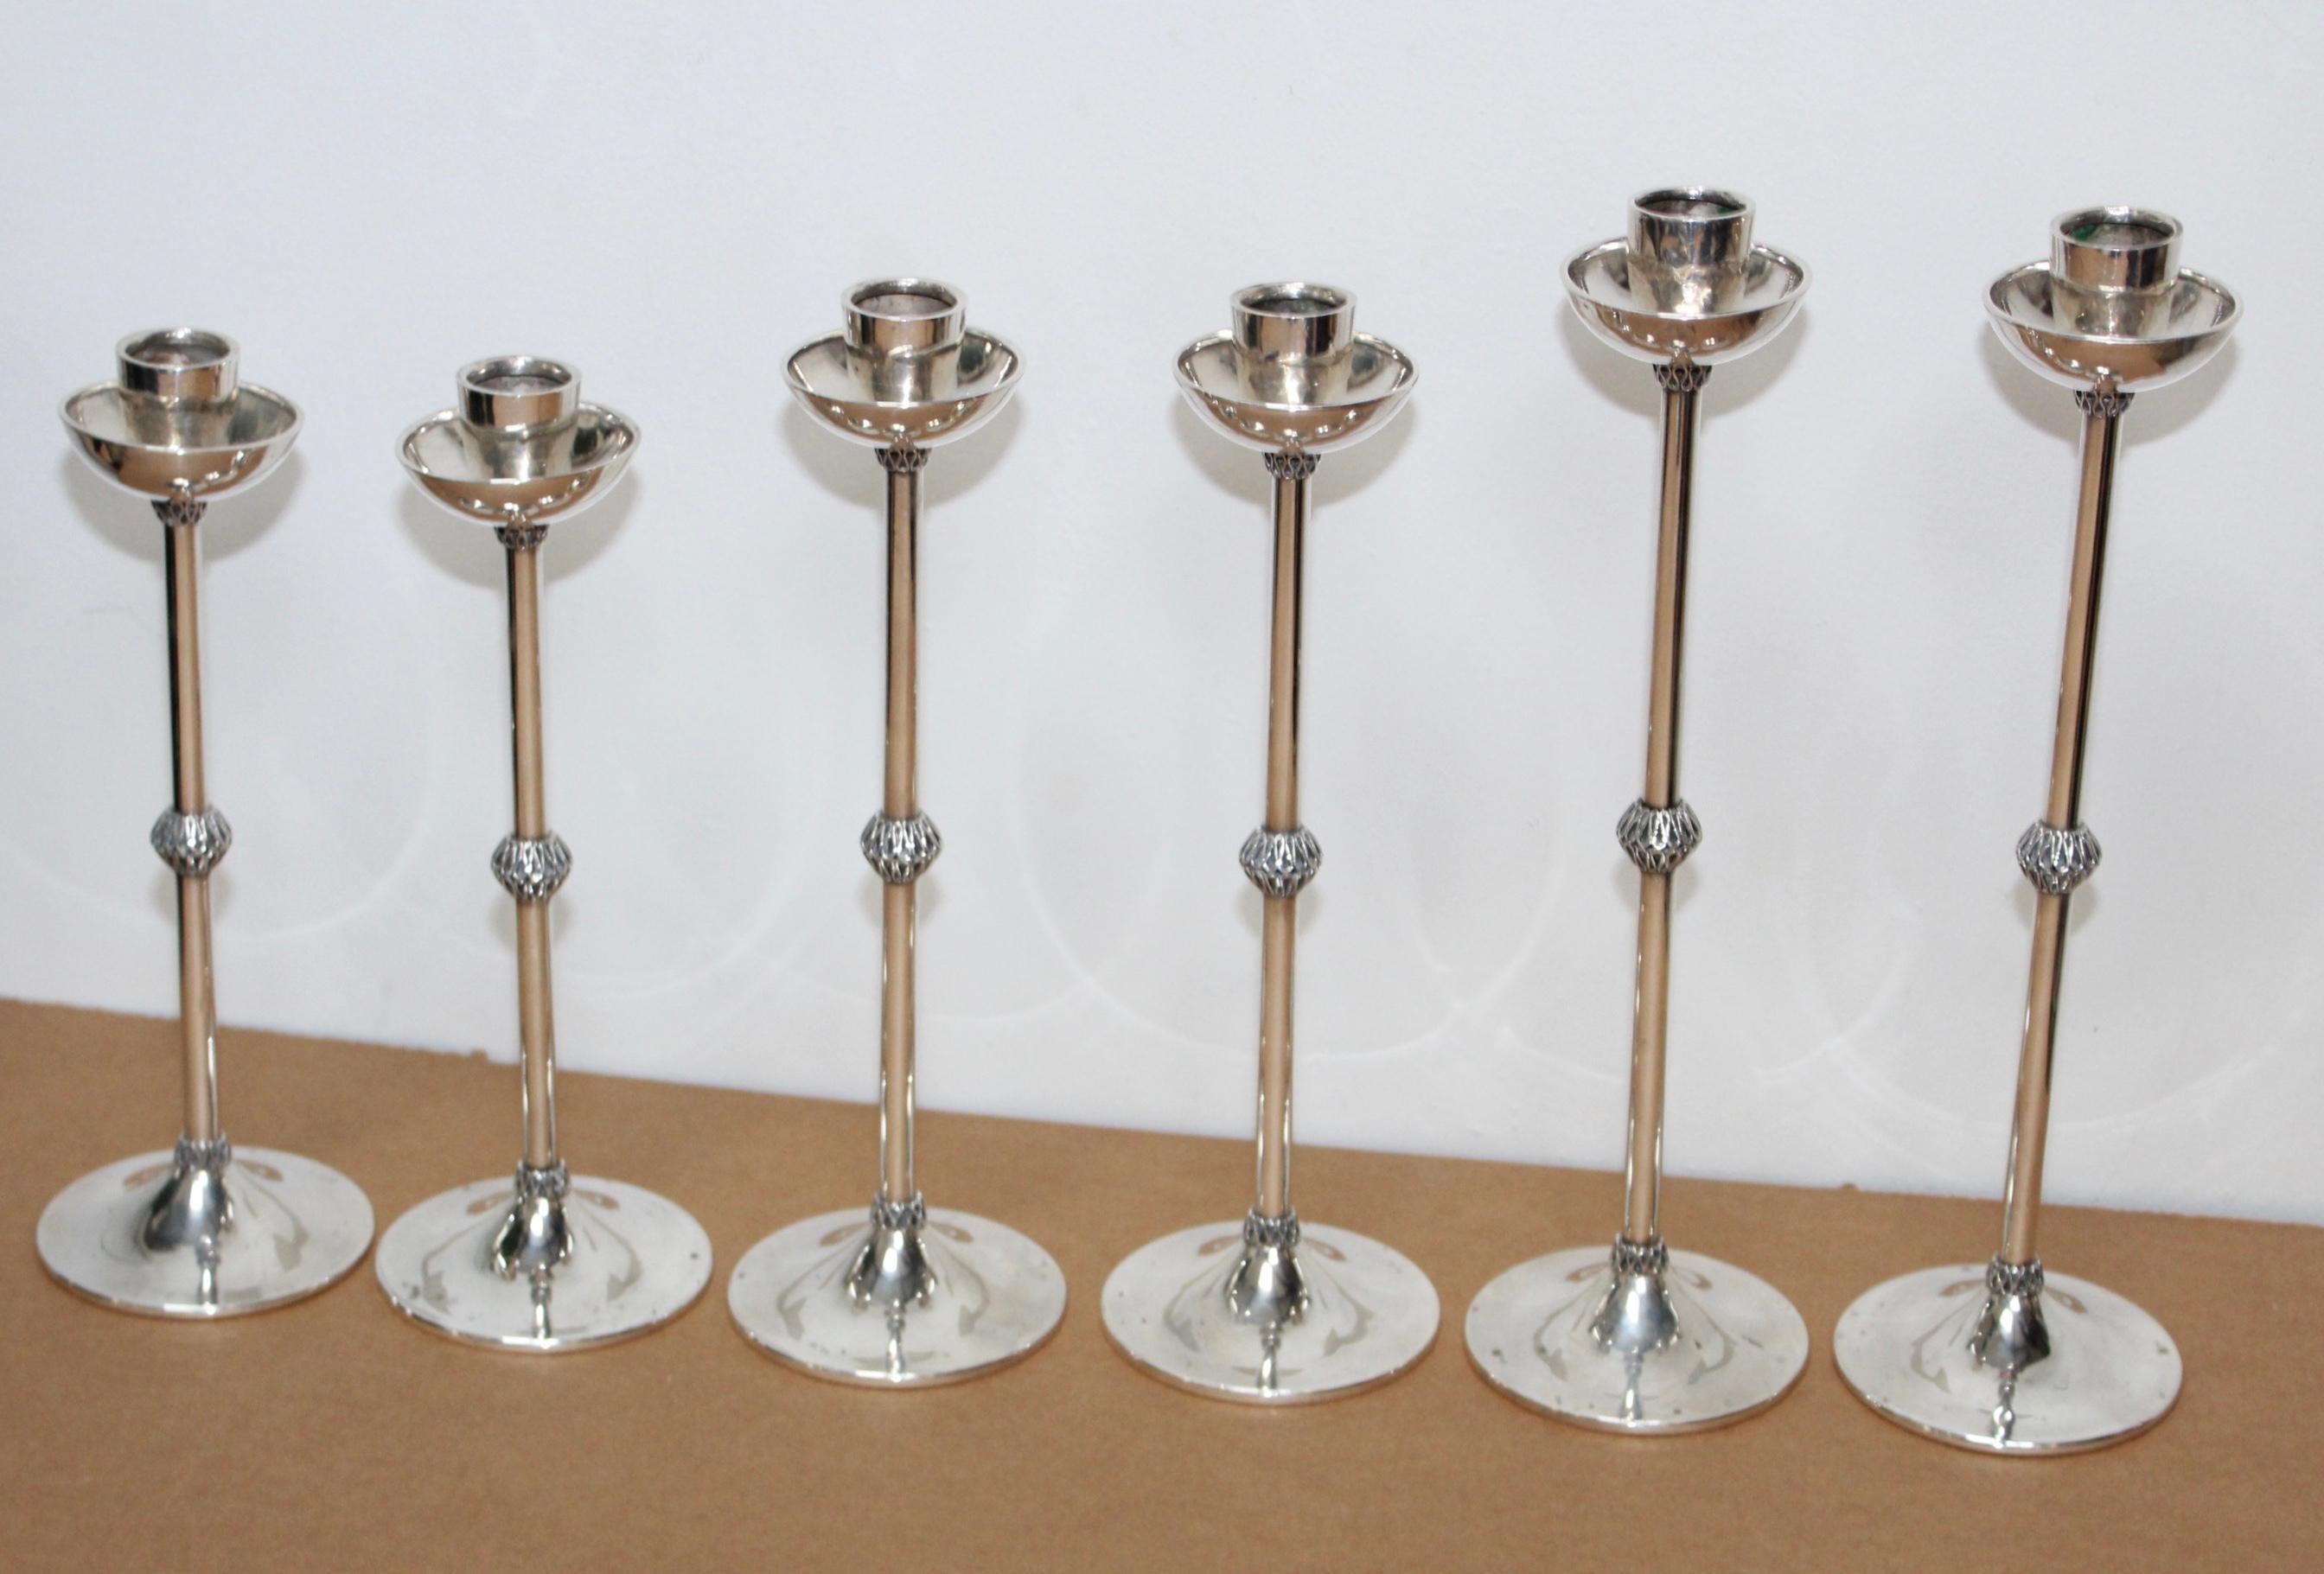 Schöner Satz von 6 Art Deco Sterling Silber Kerzenhalter aus den 1940er Jahren, in Vintage Originalzustand mit einigen Verschleiß und Patina und ein paar kleine Dellen.

Die Messungen sind:

Groß Höhe 13